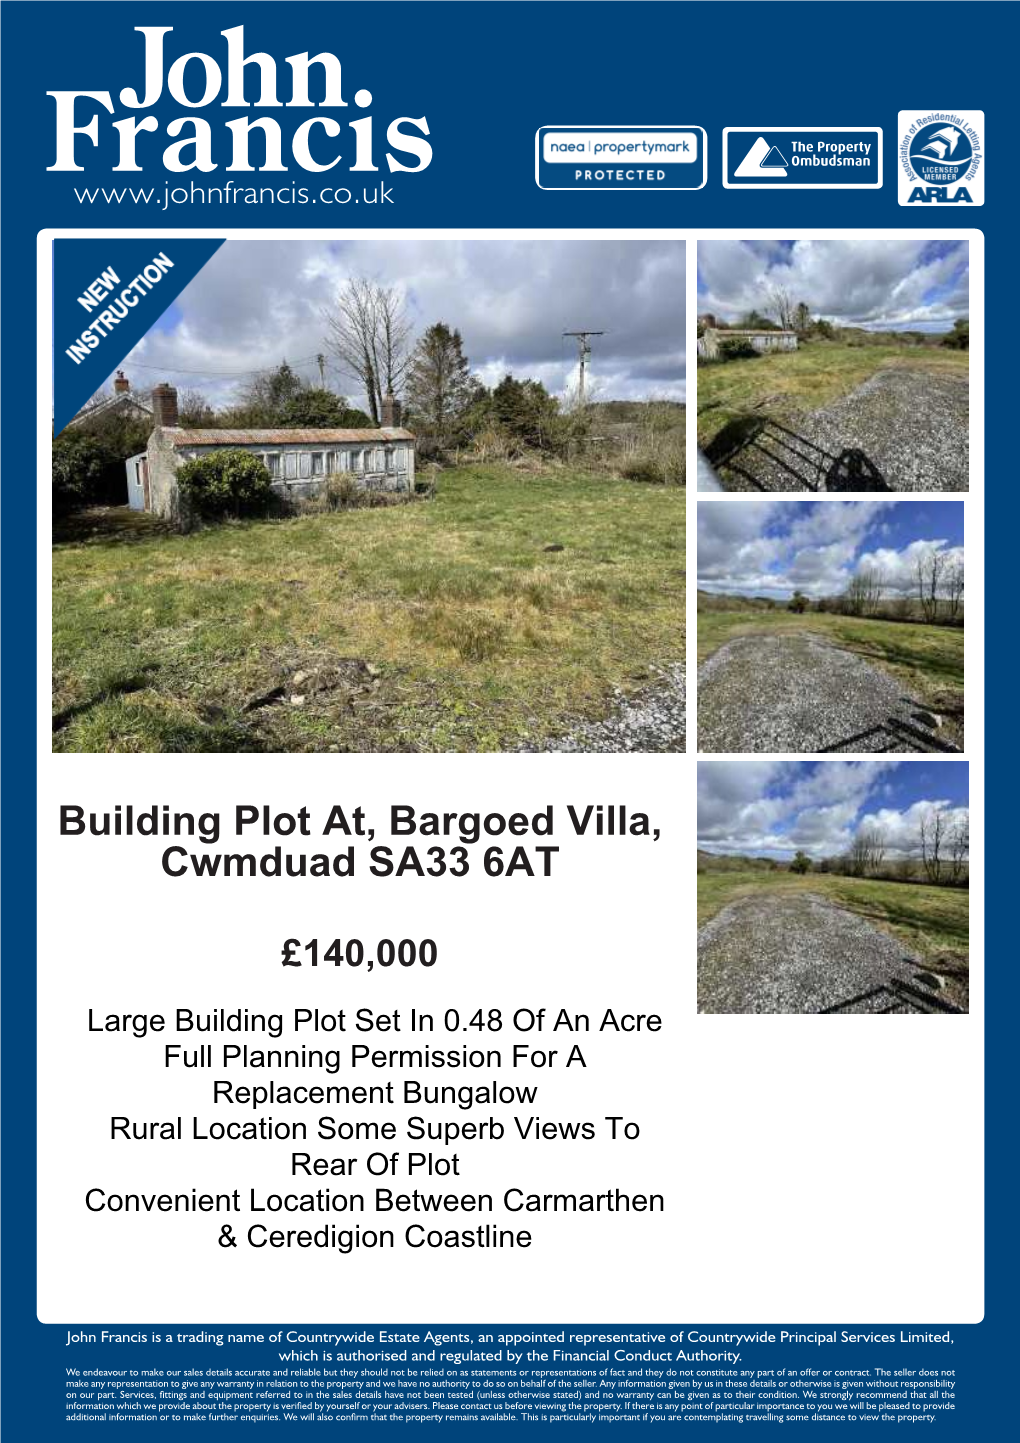 Building Plot At, Bargoed Villa, Cwmduad SA33 6AT